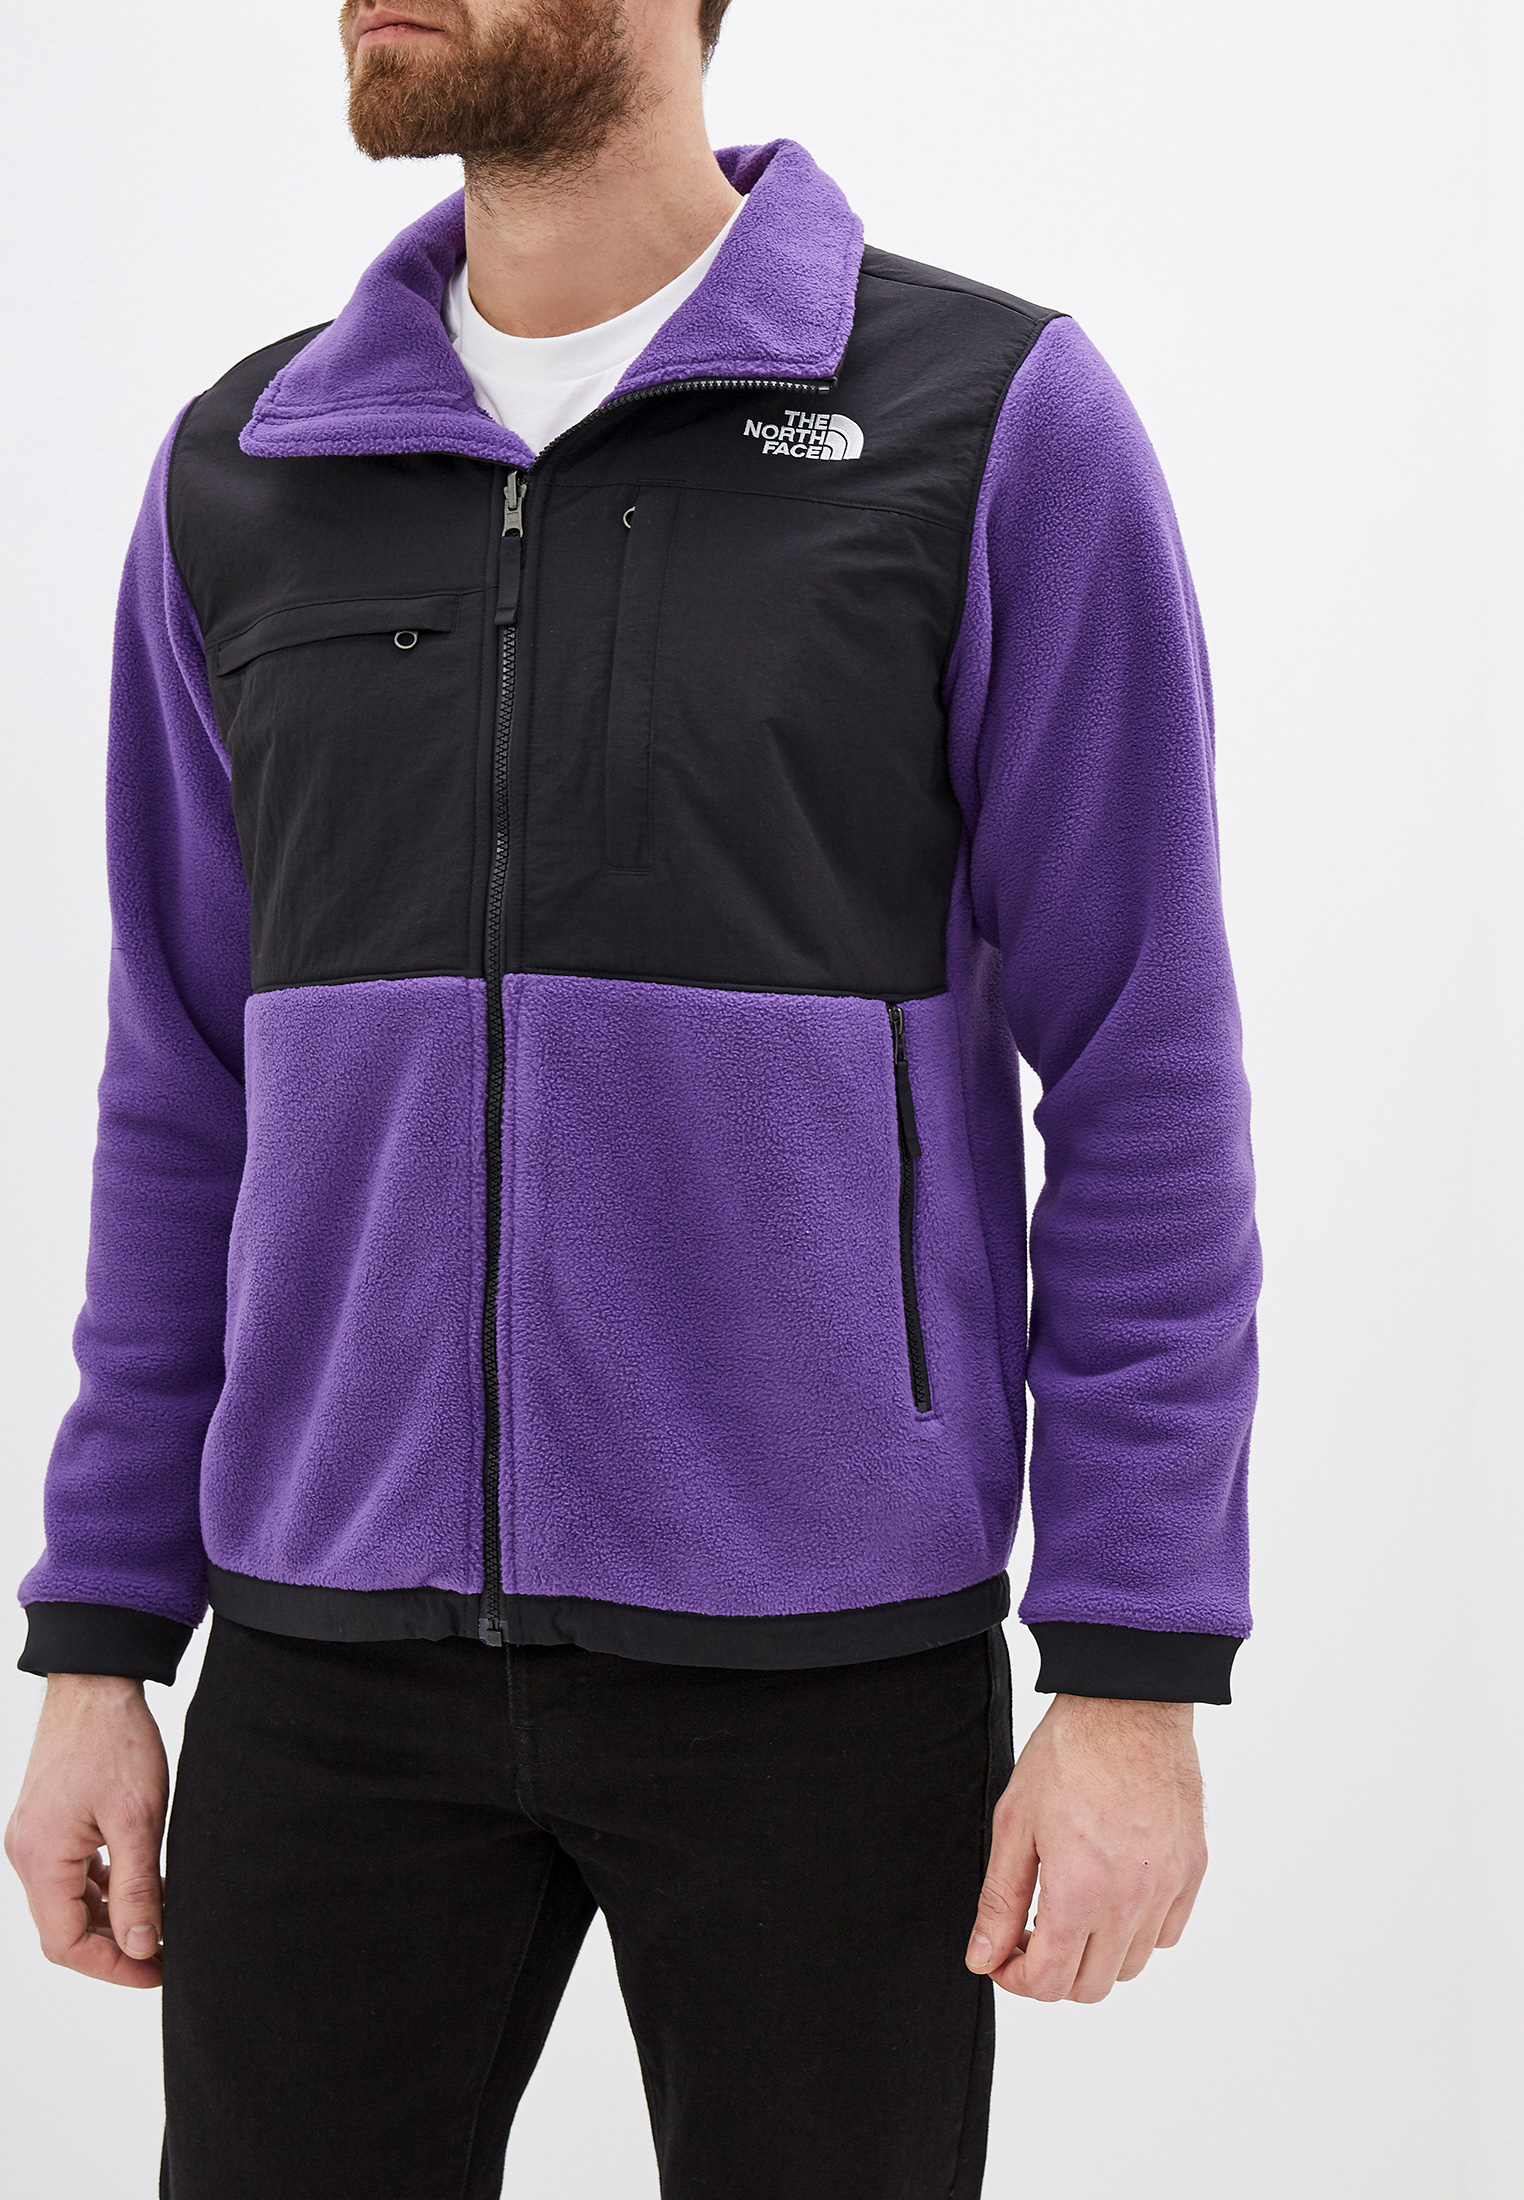 Олимпийка The North Face DENALI JACKET 2, цвет: фиолетовый, TH016EMFQLH0 —  купить в интернет-магазине Lamoda